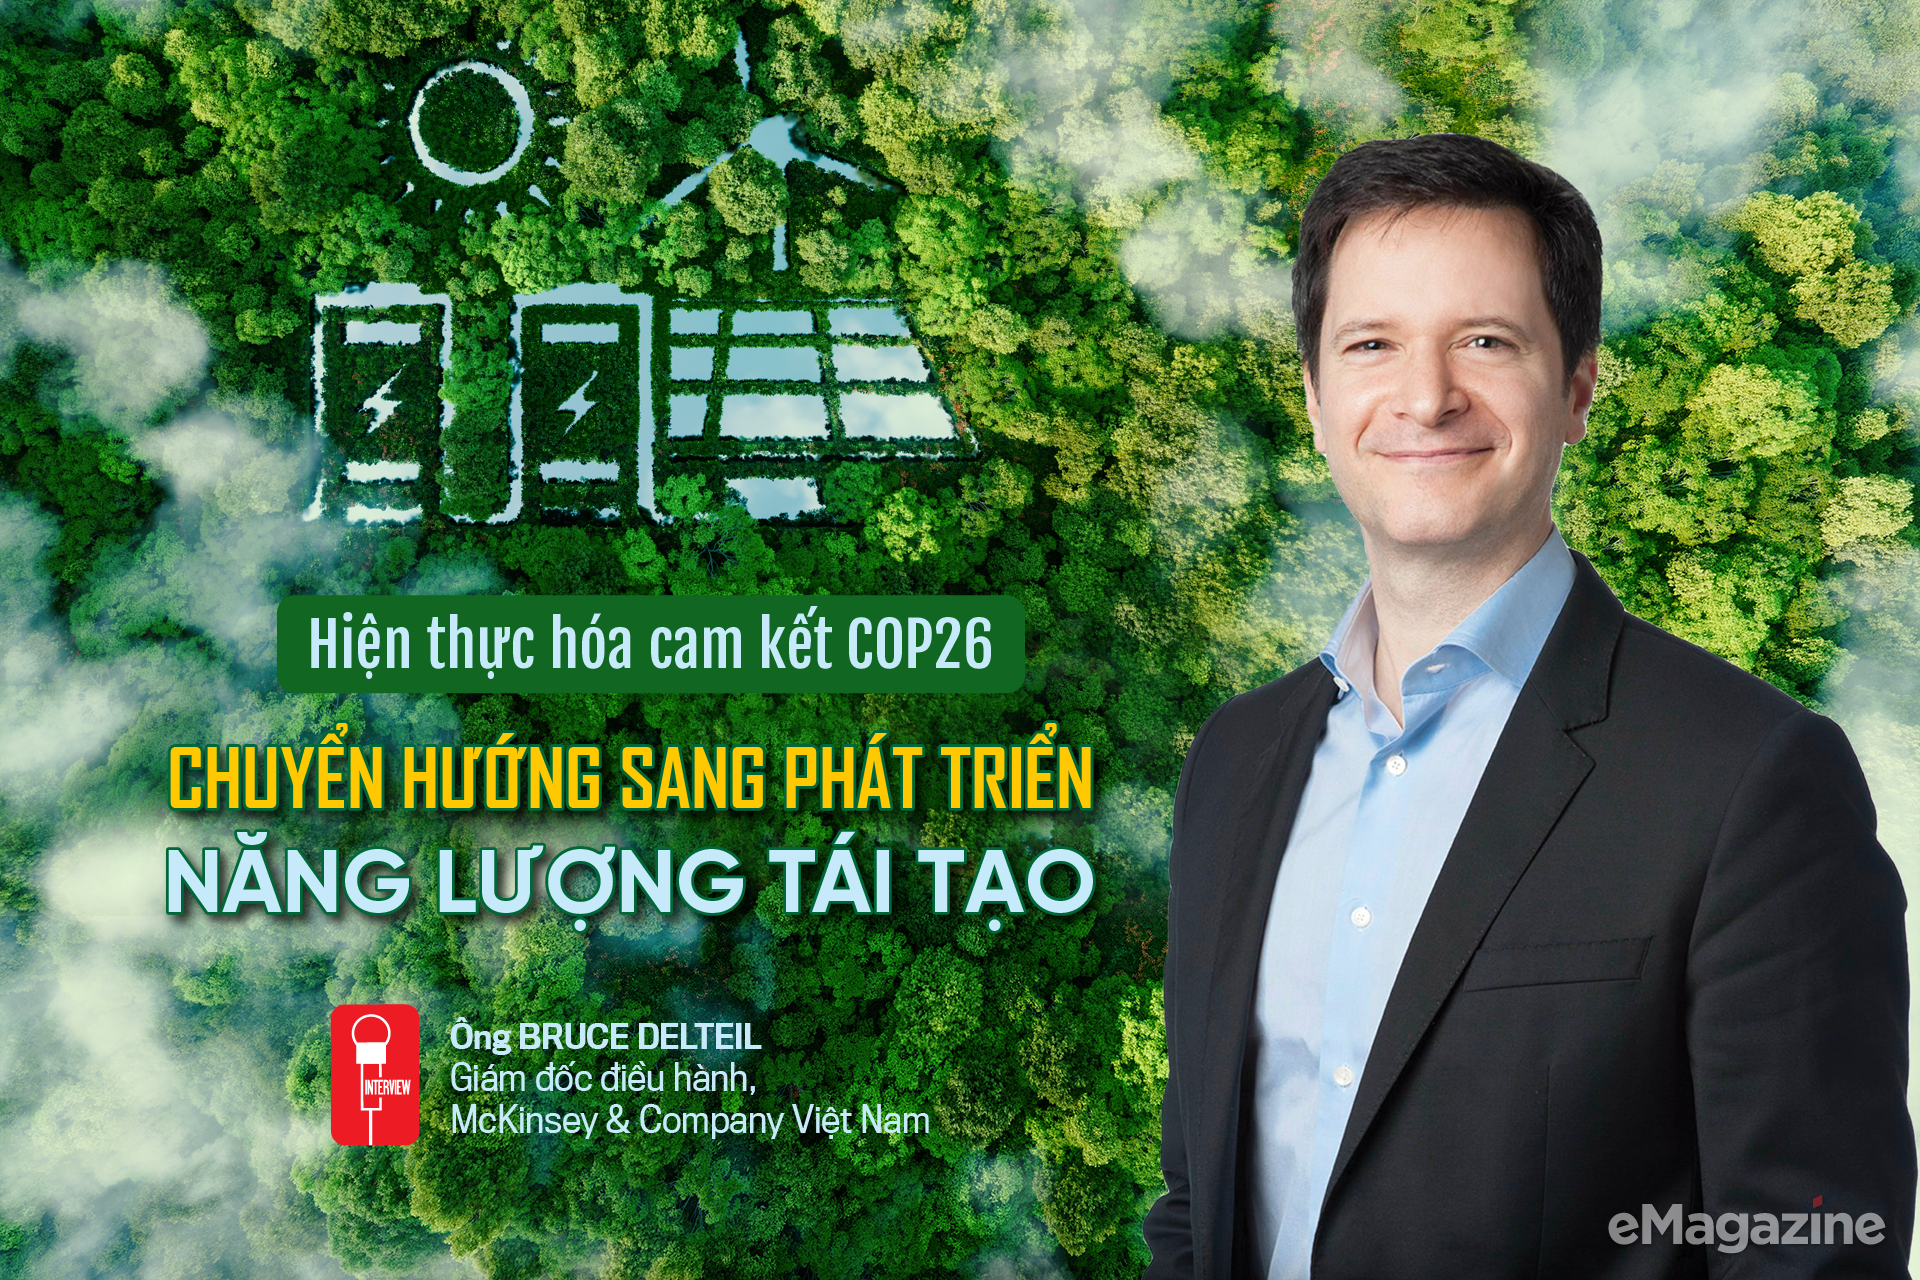 Hiện thực hóa cam kết COP26: Chuyển hướng sang phát triển năng lượng tái tạo  - Ảnh 1